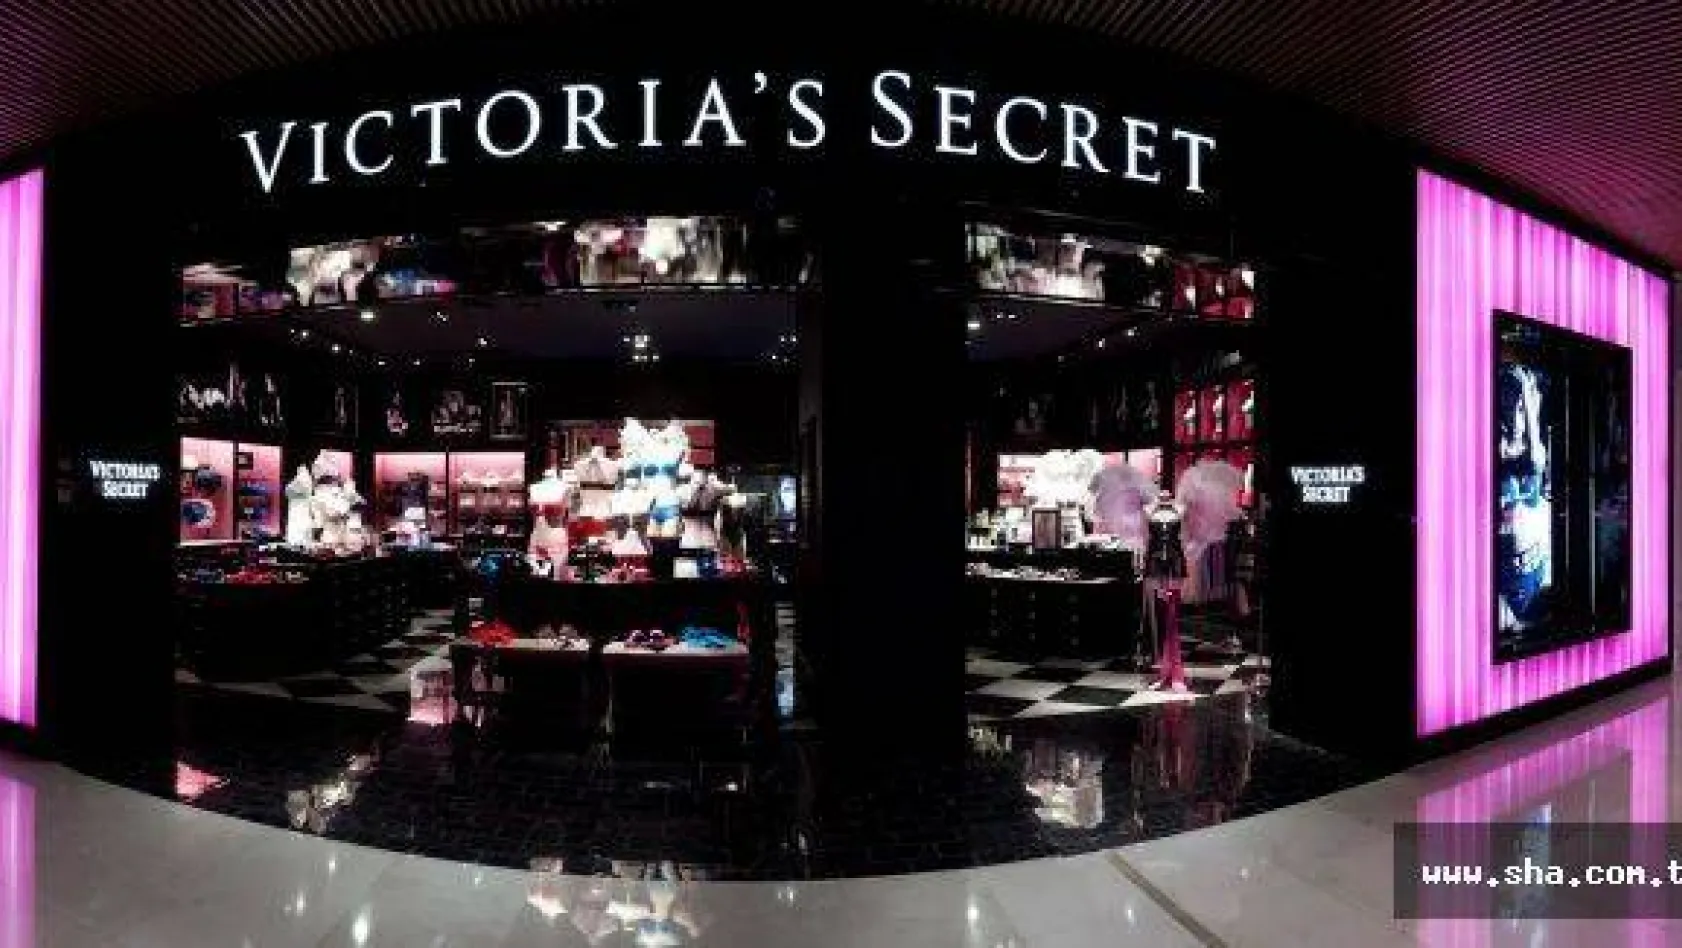 Victoria's Secret'ın sırlarla dolu öyküsü!